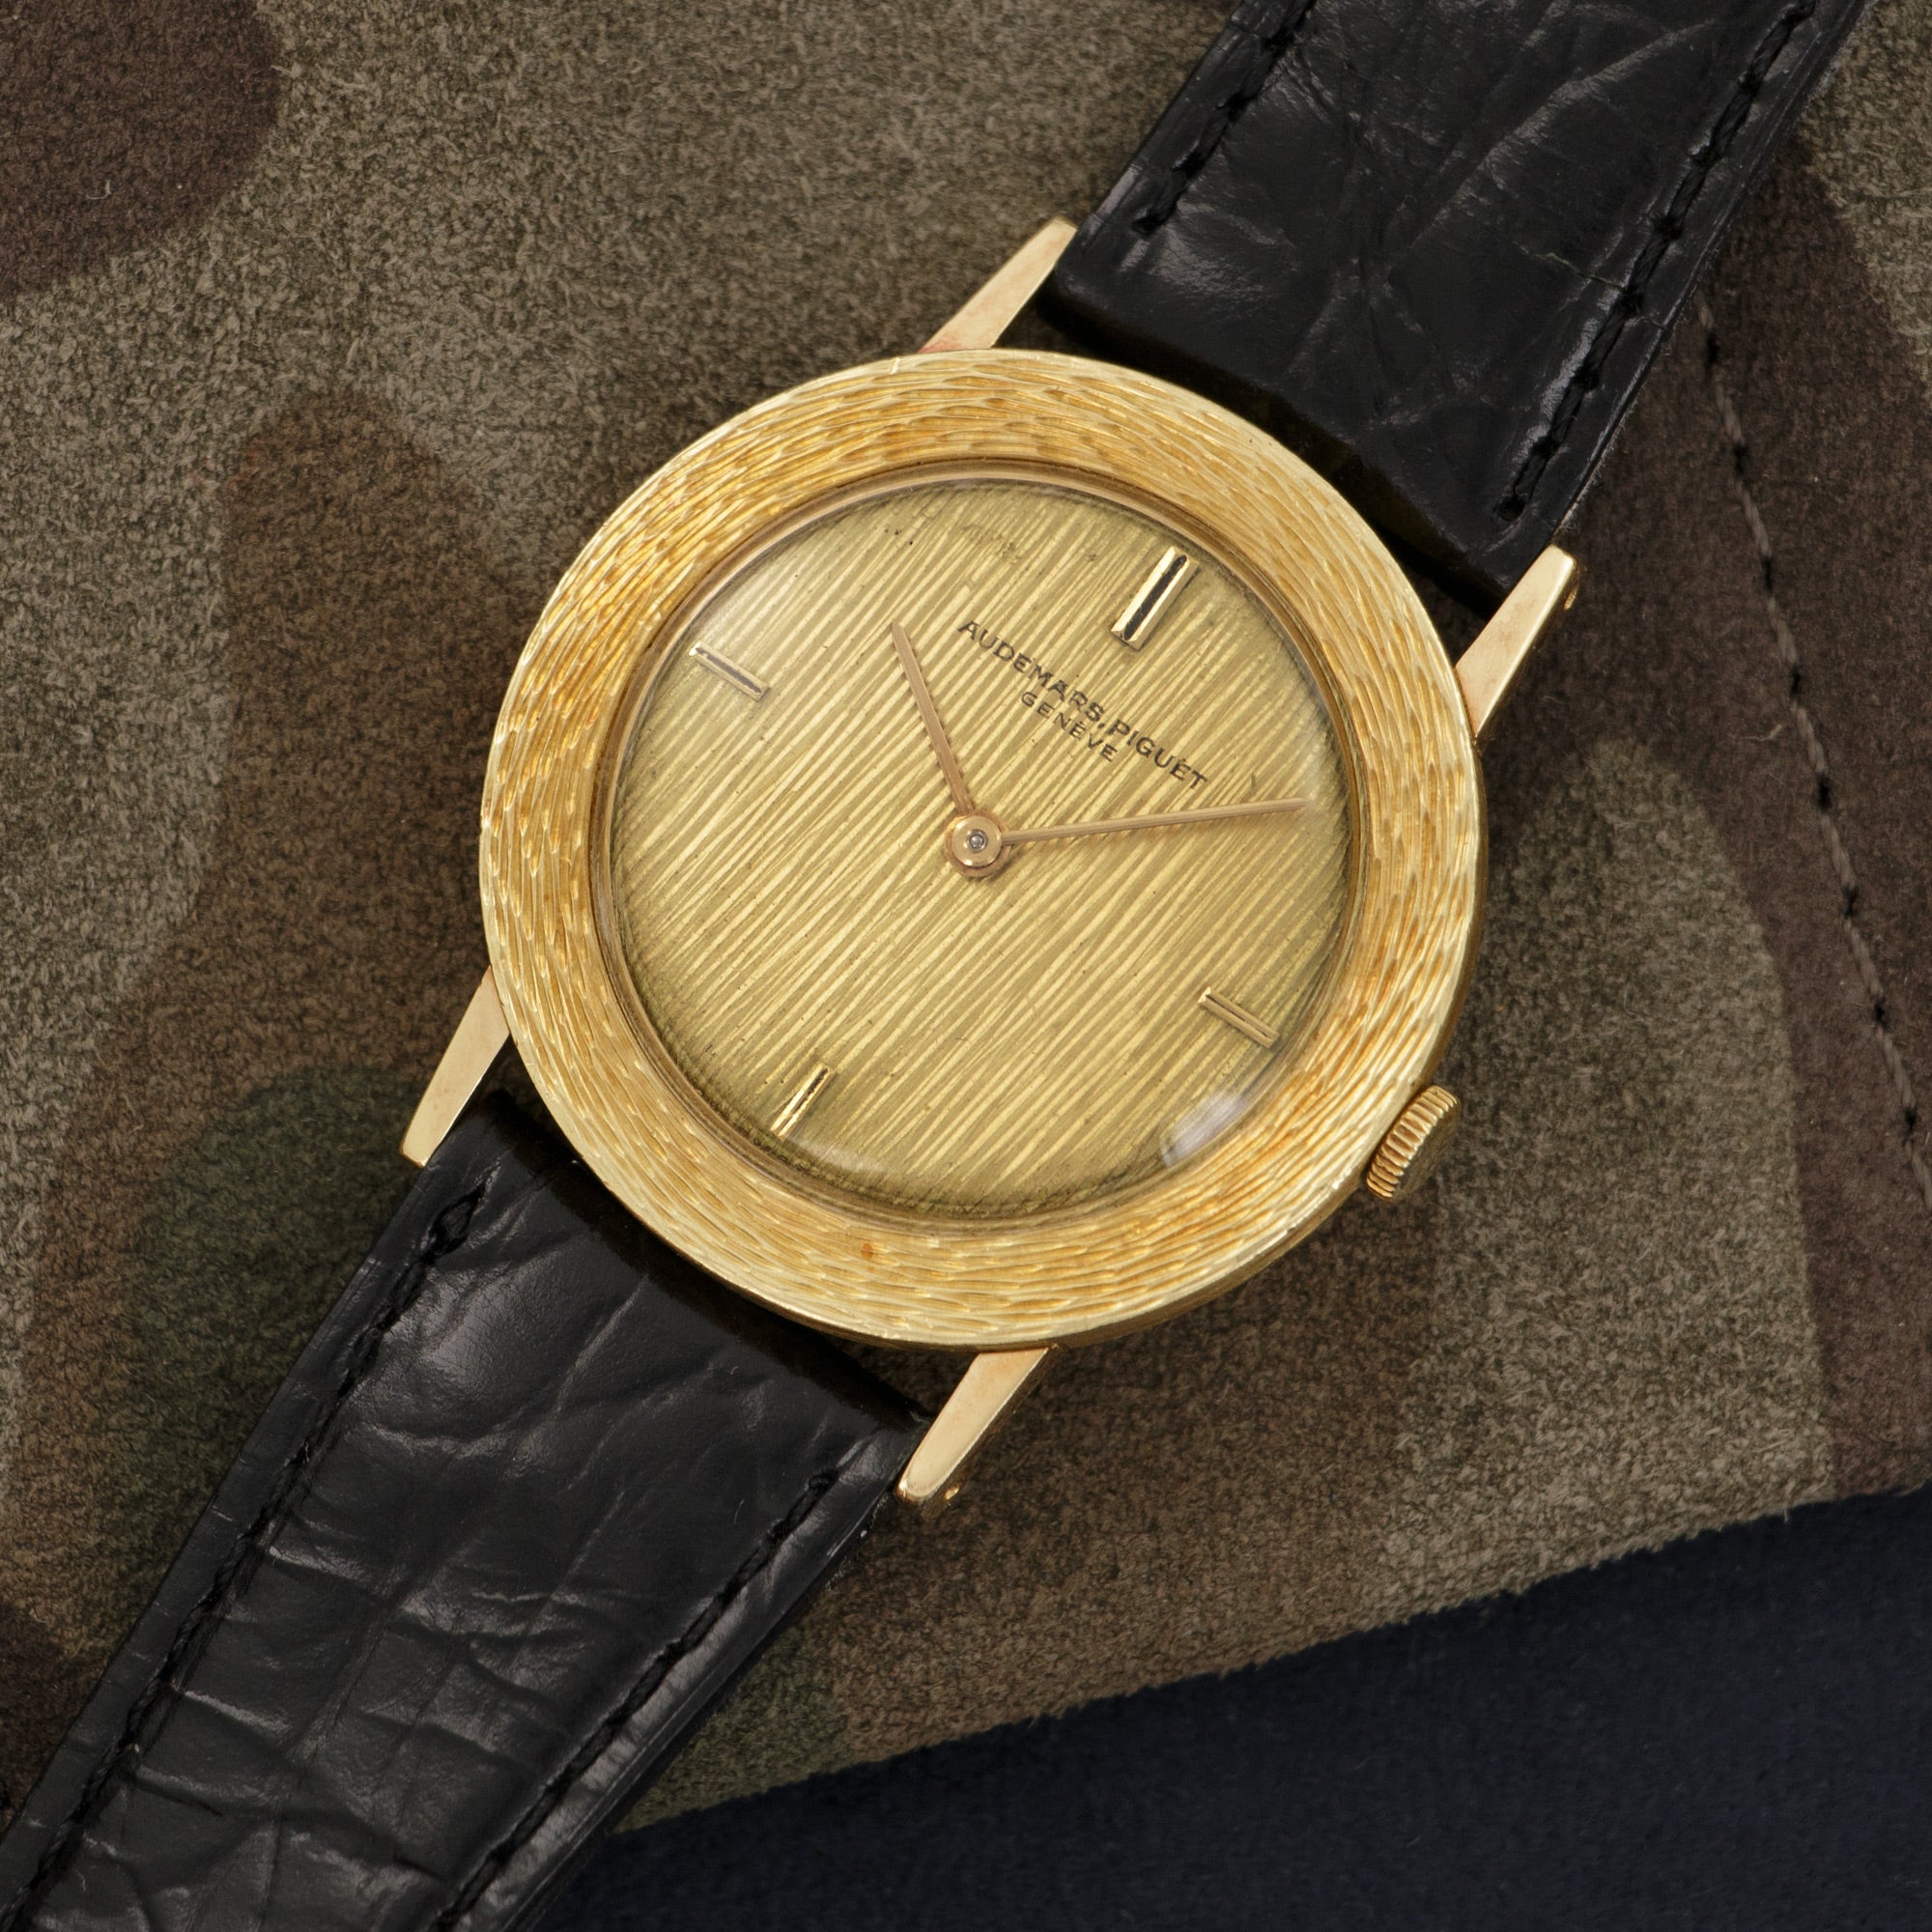 Audemars Piguet - Audemars Piguet Yellow Gold Ultra-Thin Strap Watch - The Keystone Watches